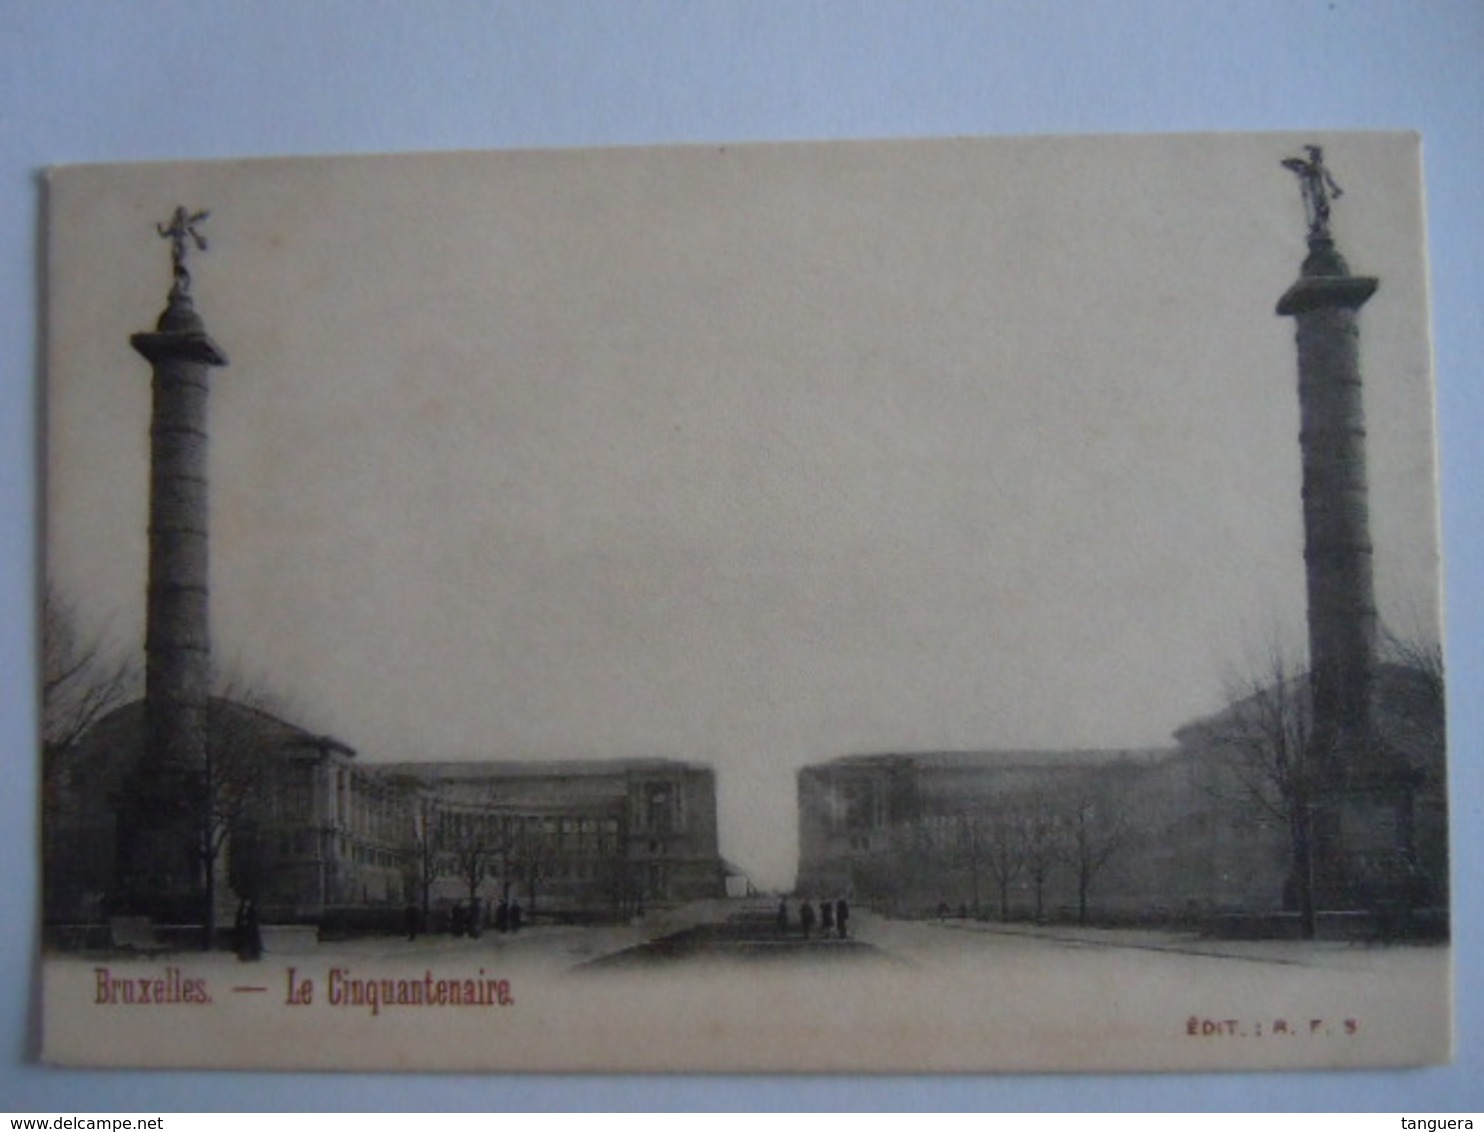 Bruxelles Le Cinquantenaire Edit: R. F. 5 Précurseur - Monuments, édifices